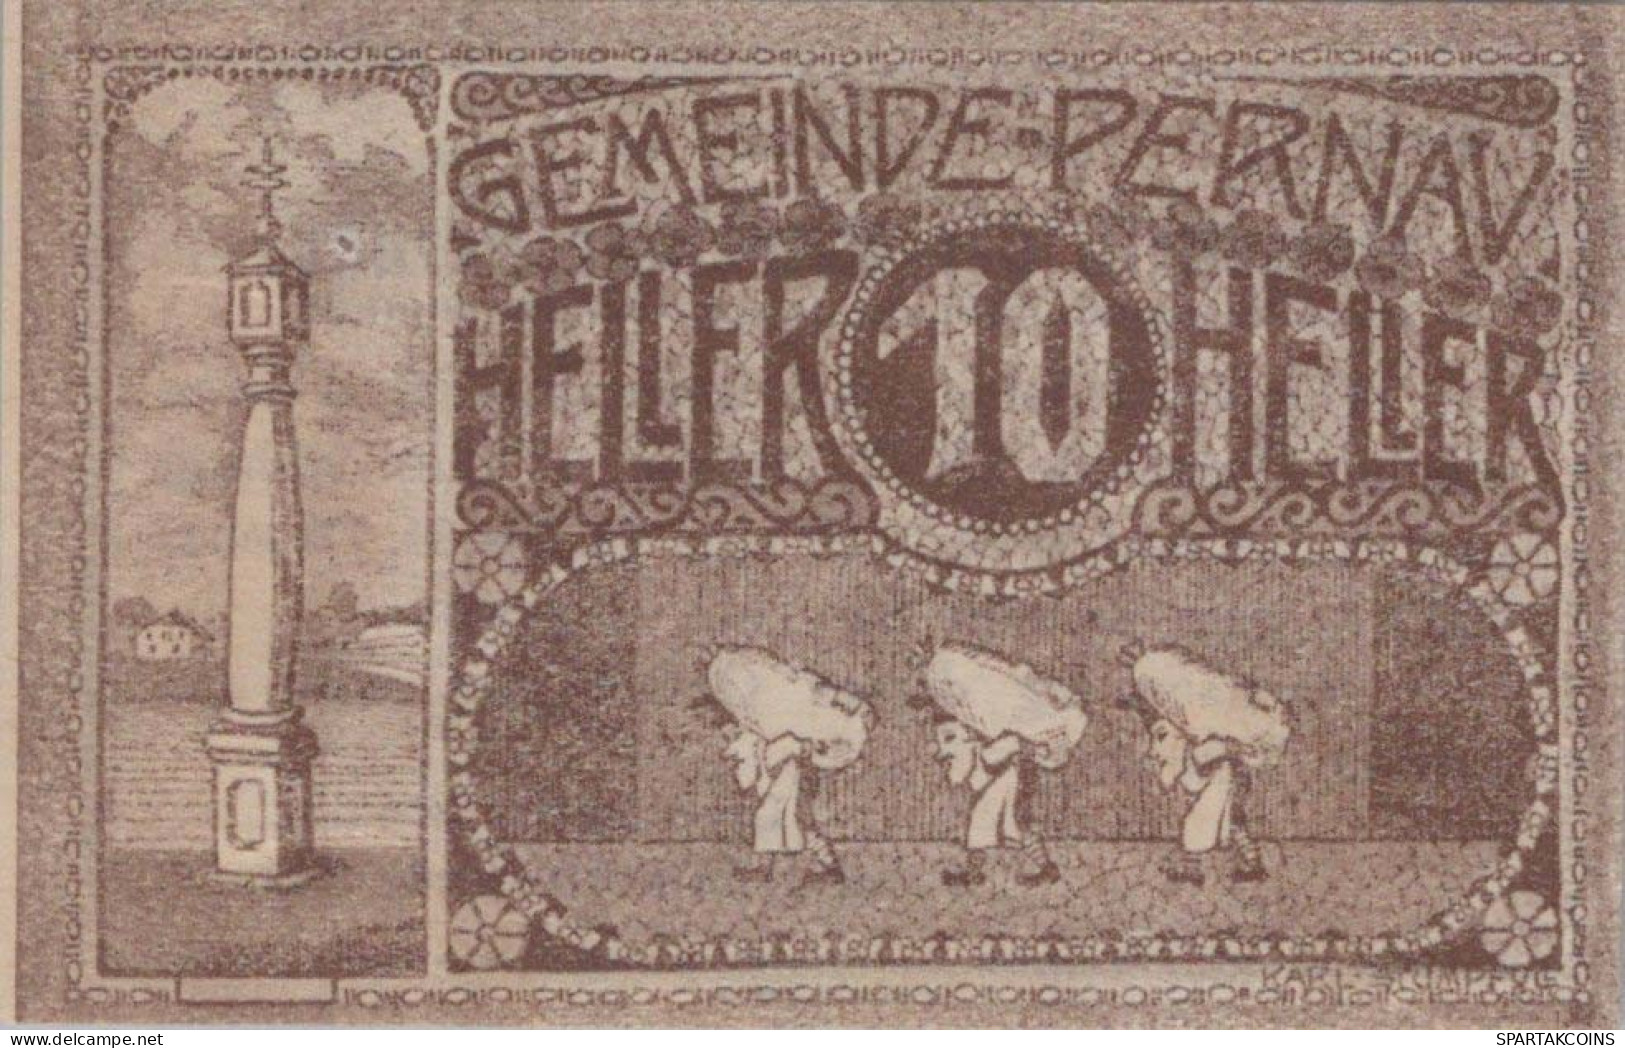 10 HELLER 1920 Stadt PERNAU Oberösterreich Österreich Notgeld Banknote #PE333 - [11] Local Banknote Issues